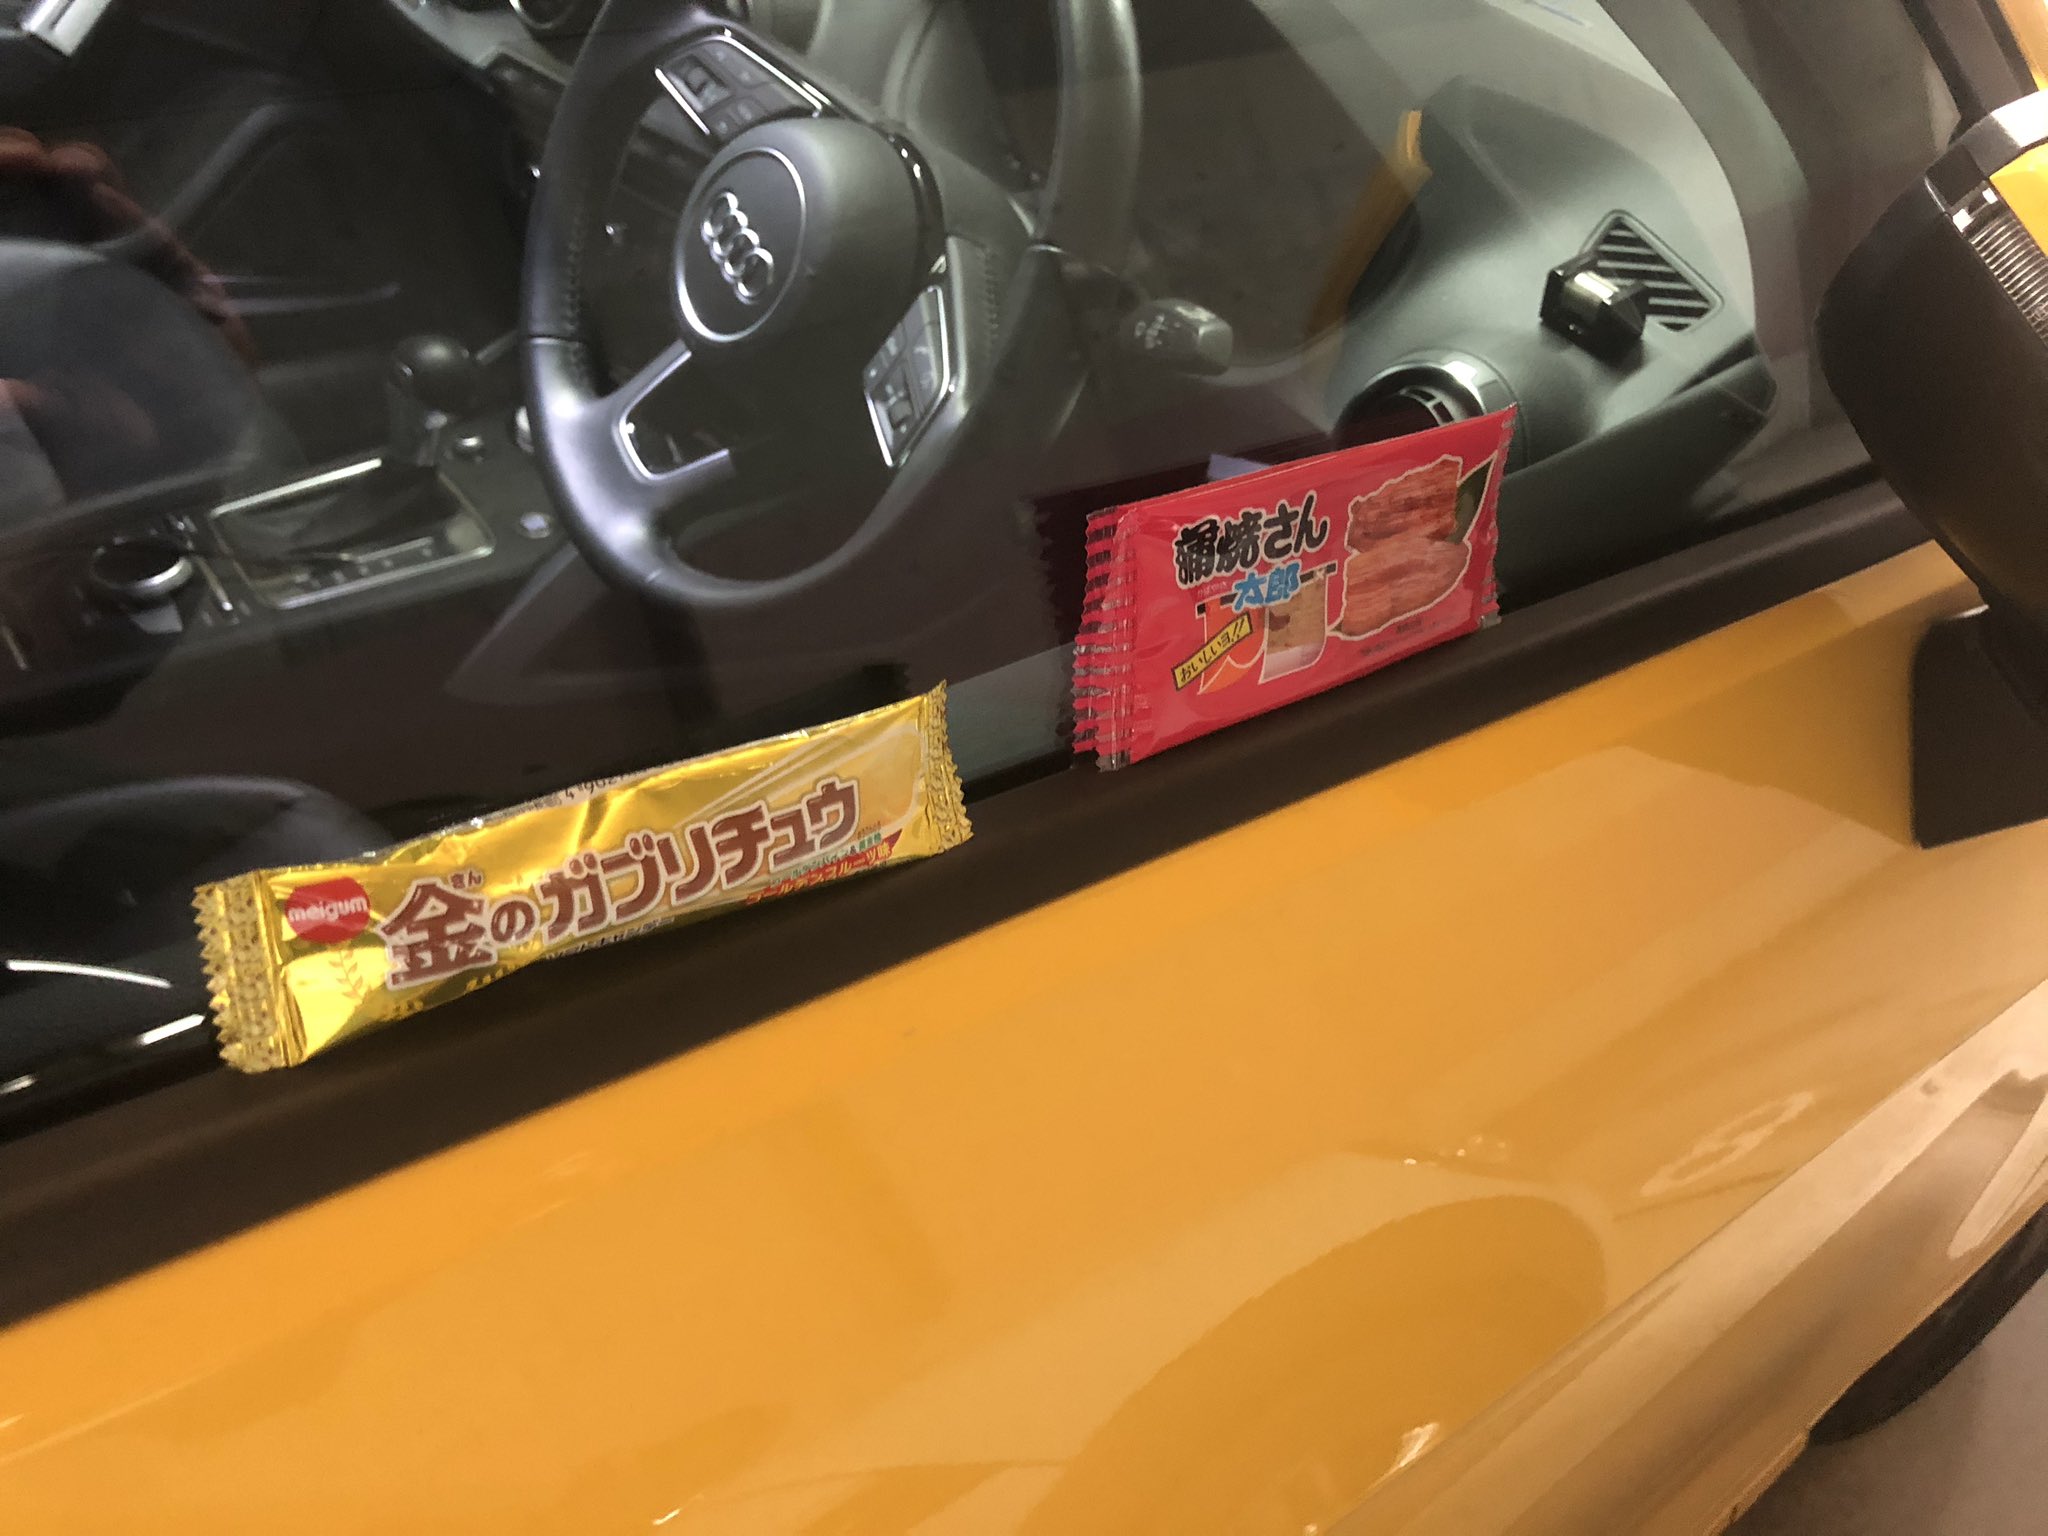 アルコ ピース平子 テレビ局で車に駄菓子が置いてある怪奇現象 今だに続いてるんだけどさ 最近は駄菓子から幸せの香りがするんだよなあ 犯人結婚でもしたのかな